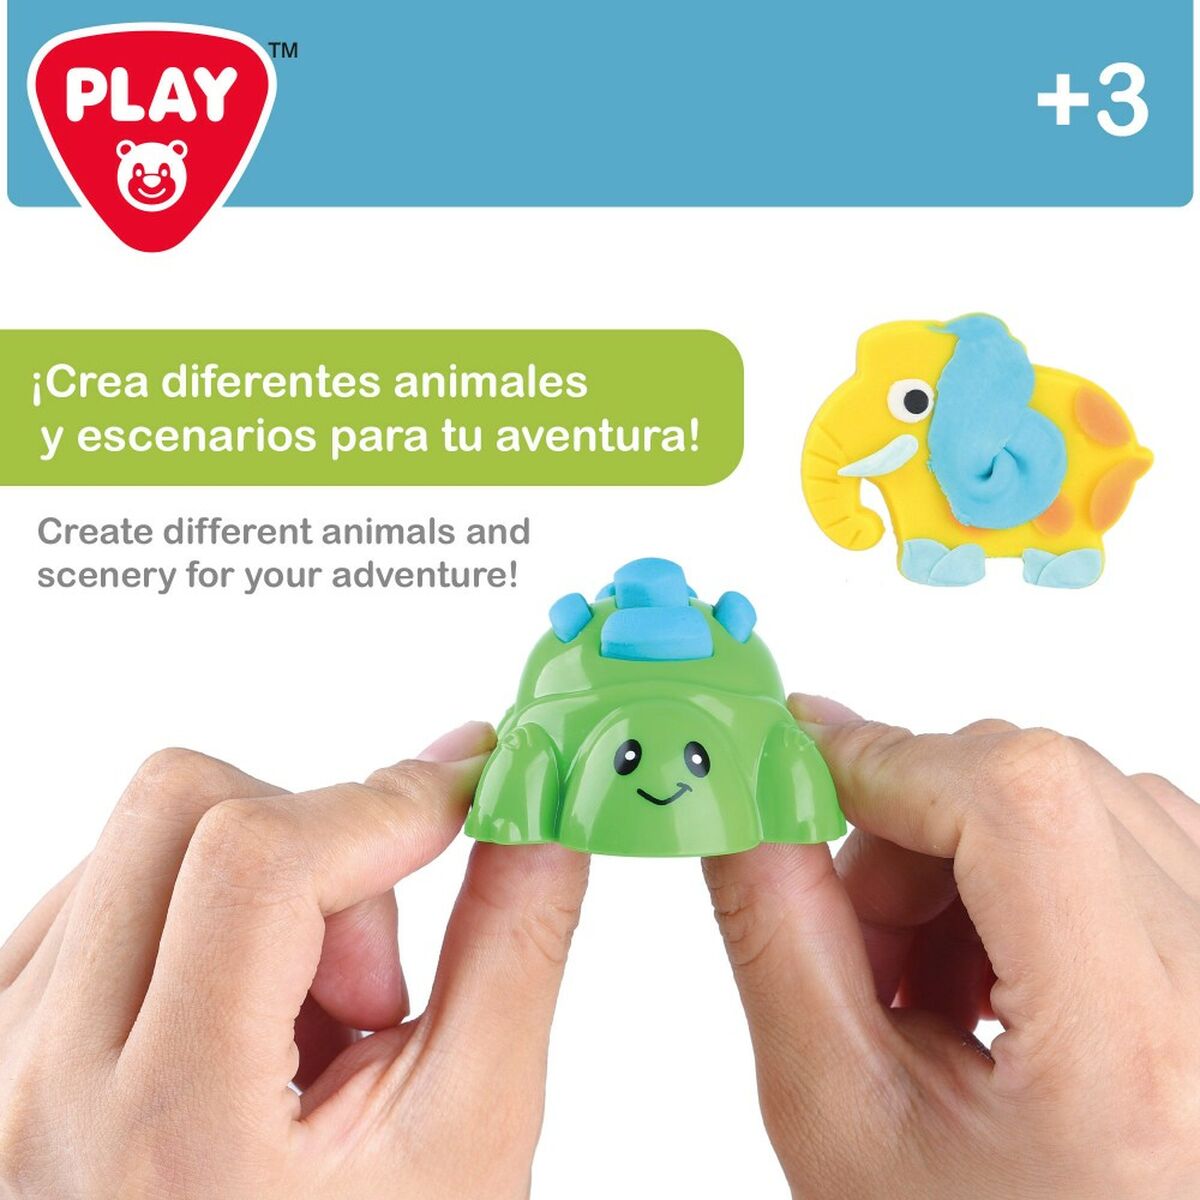 Modellera Spel PlayGo Ö (6 antal)-Leksaker och spel, Kreativa aktiviteter-PlayGo-peaceofhome.se